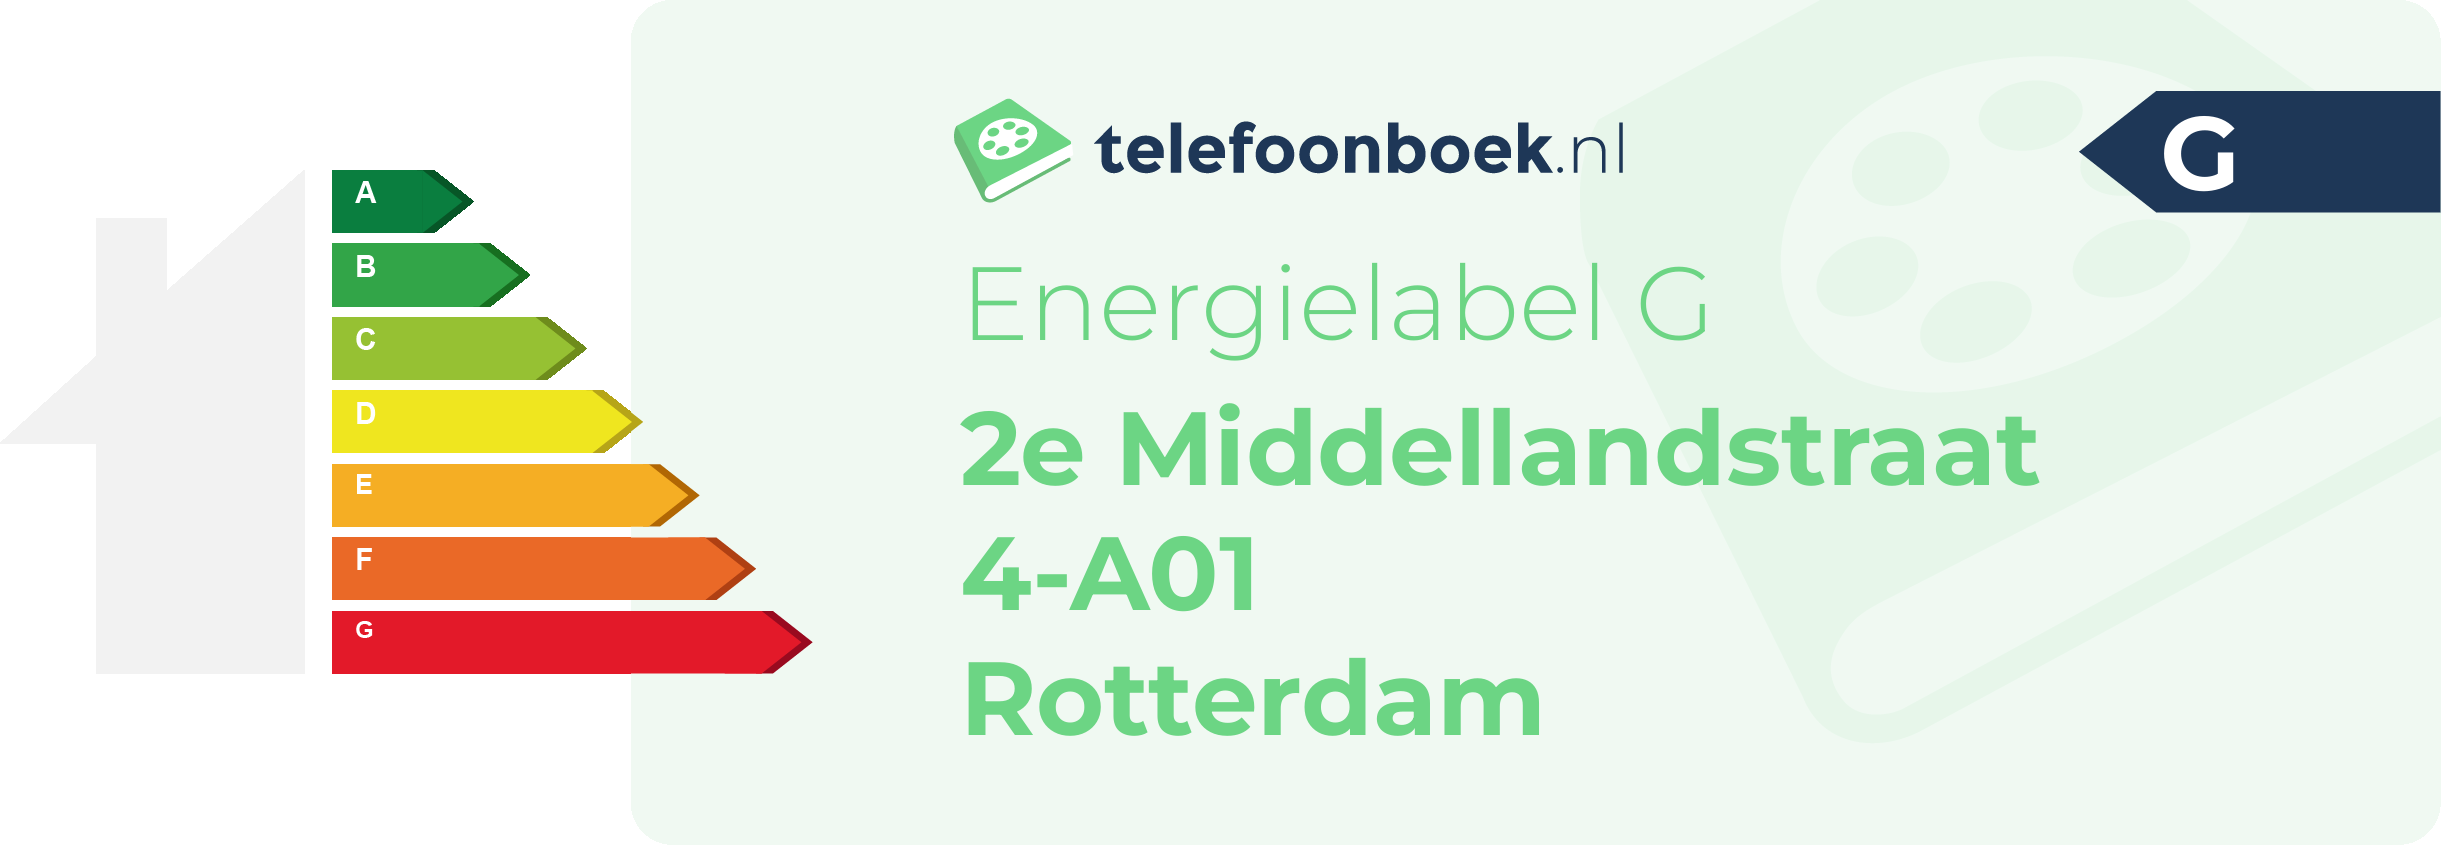 Energielabel 2e Middellandstraat 4-A01 Rotterdam